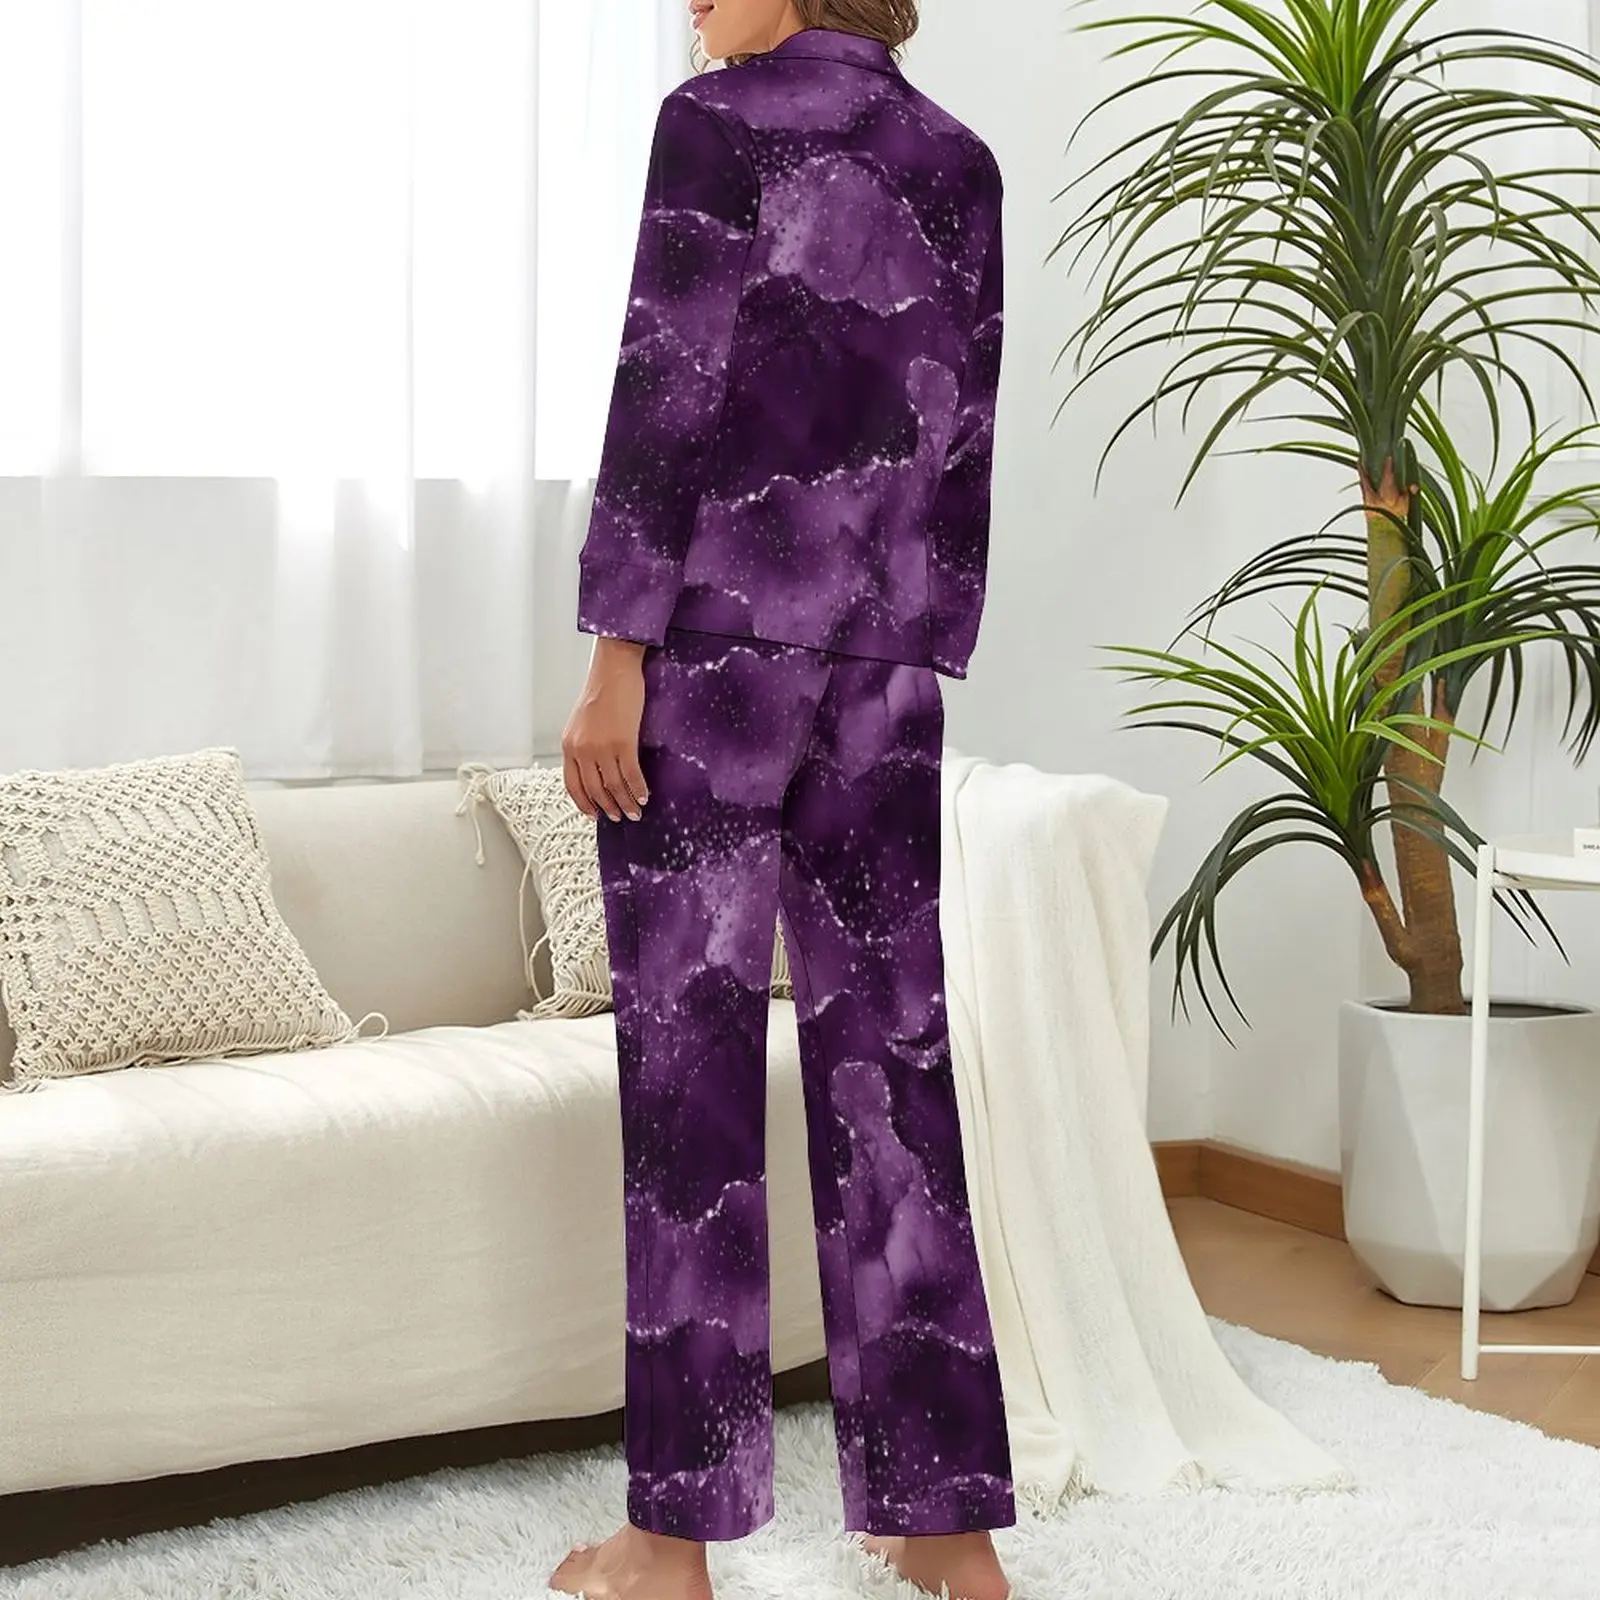 Márvány pizsama női hangulatos lila achát meleg hálóruha őszi hosszú ujjú 2 részes alvás V nyak egyedi pizsama szett - 2